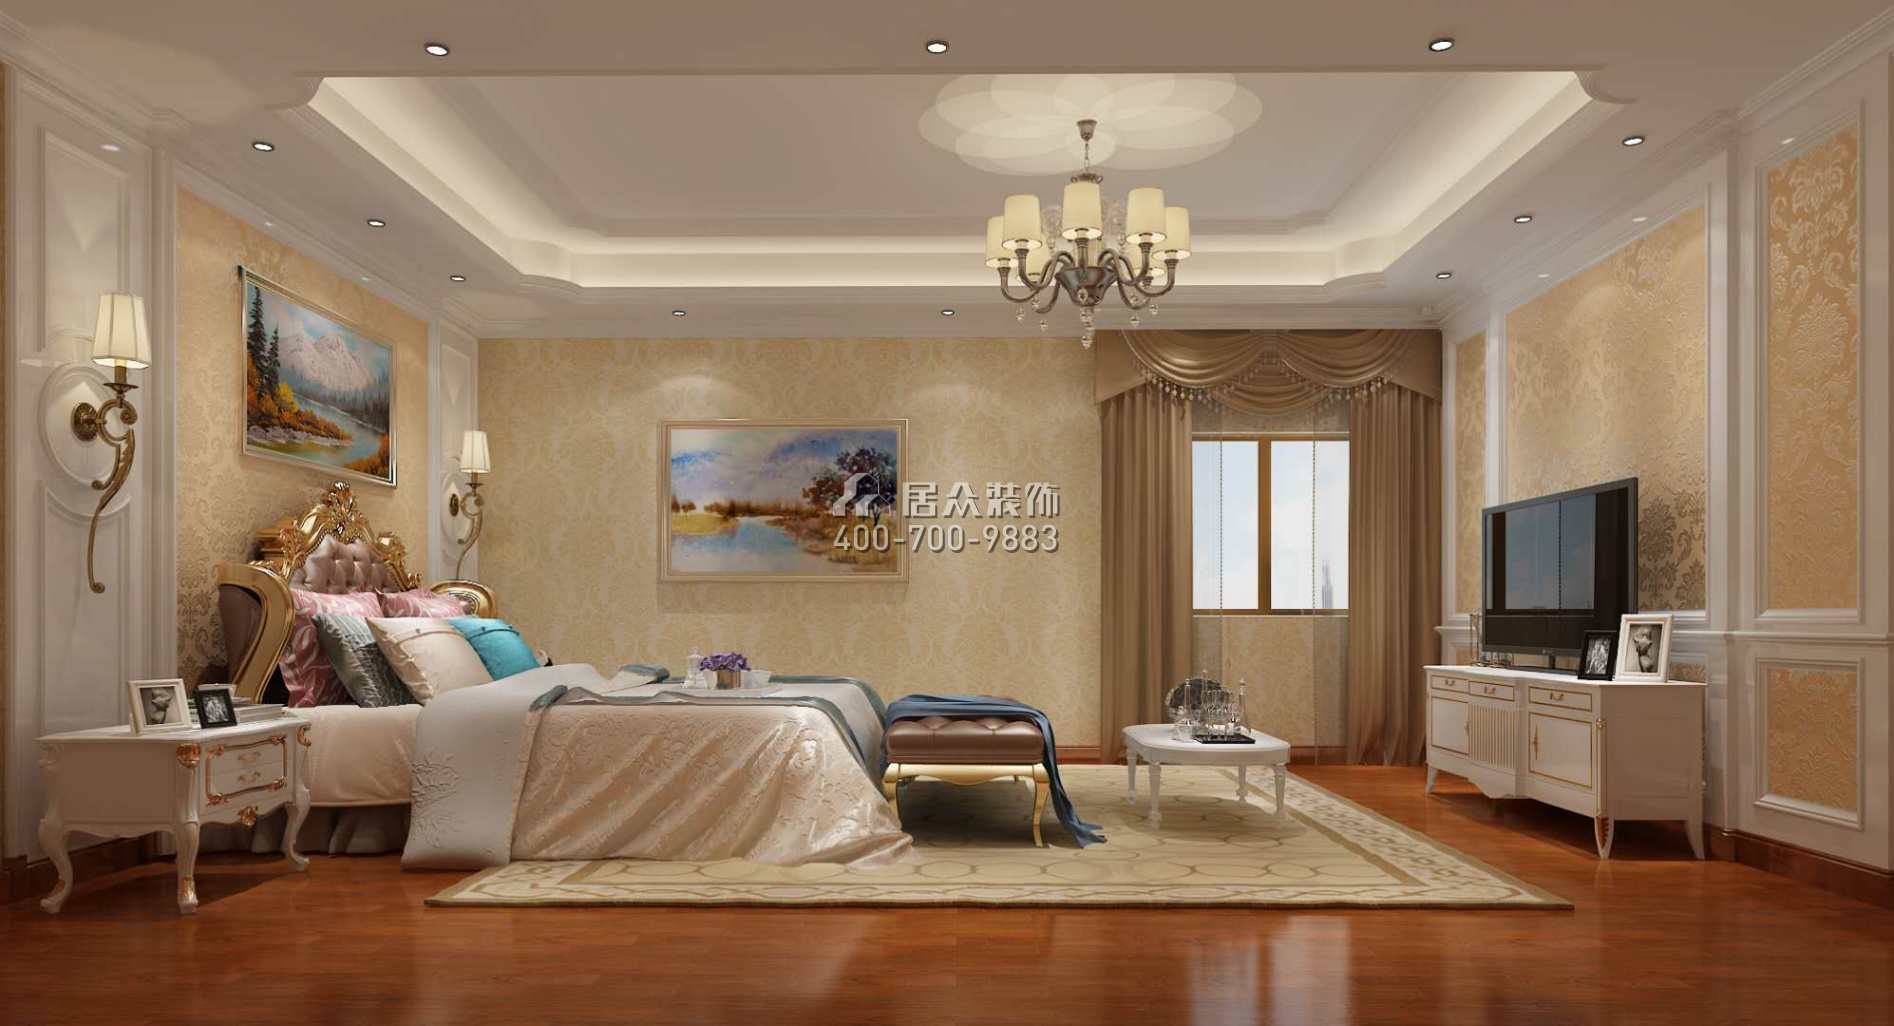 碧桂園太陽城400平方米歐式風格別墅戶型臥室裝修效果圖